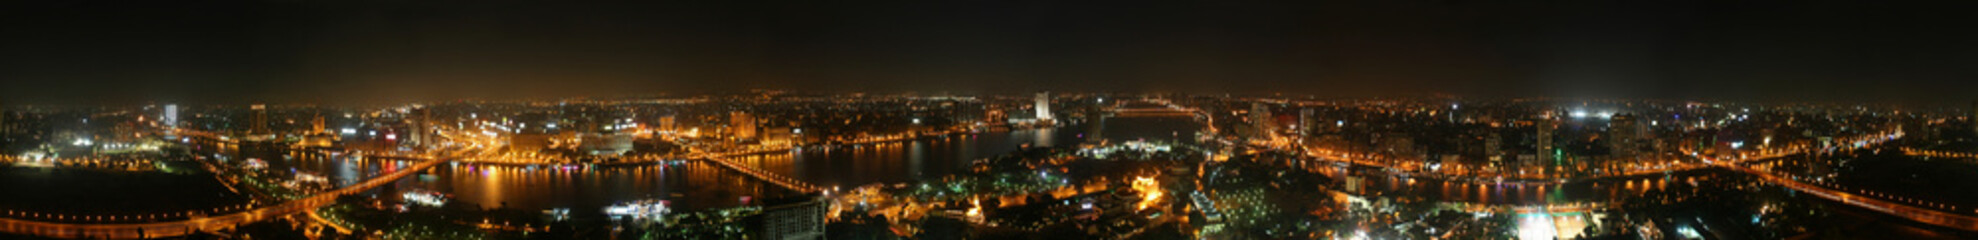 Cairo at night - 360